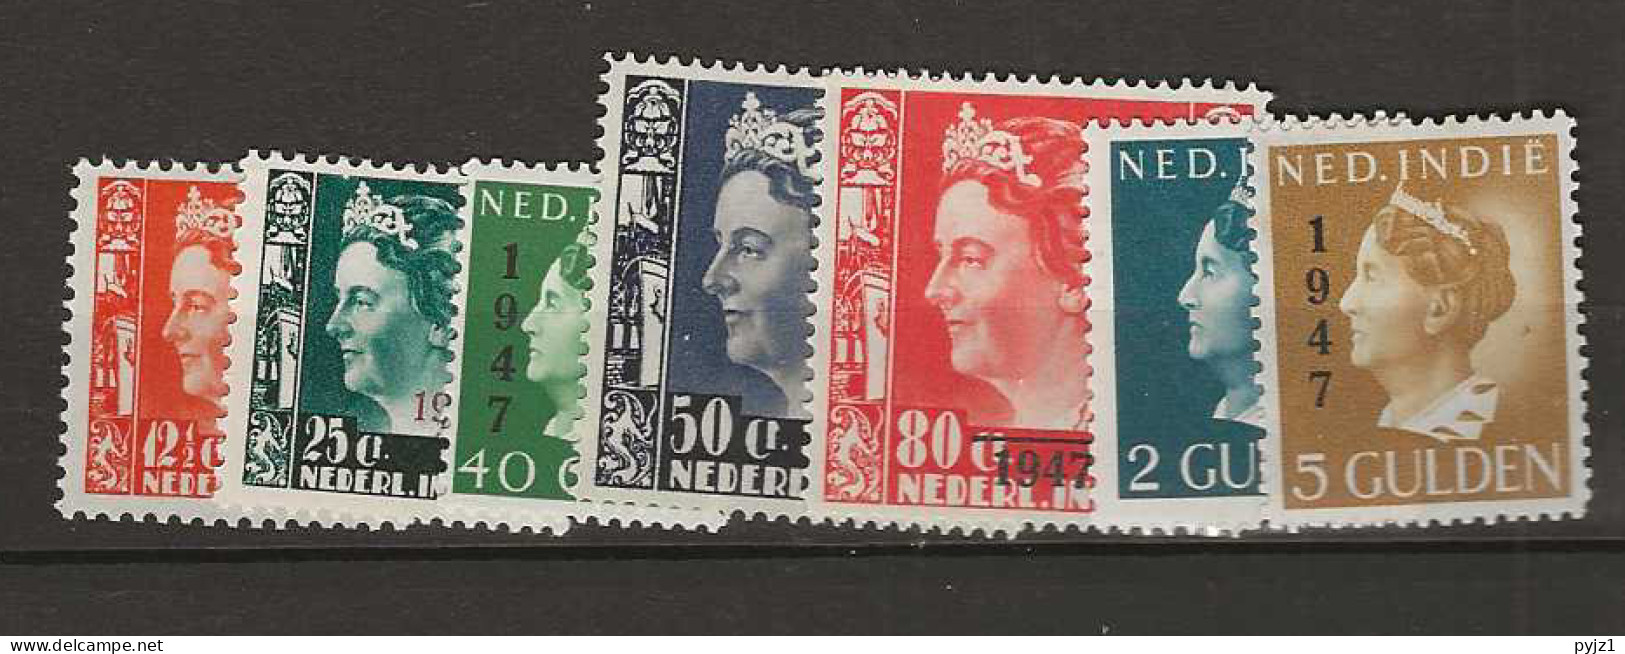 1947 MH Nederlands Indië NVPH 326-32 - Netherlands Indies